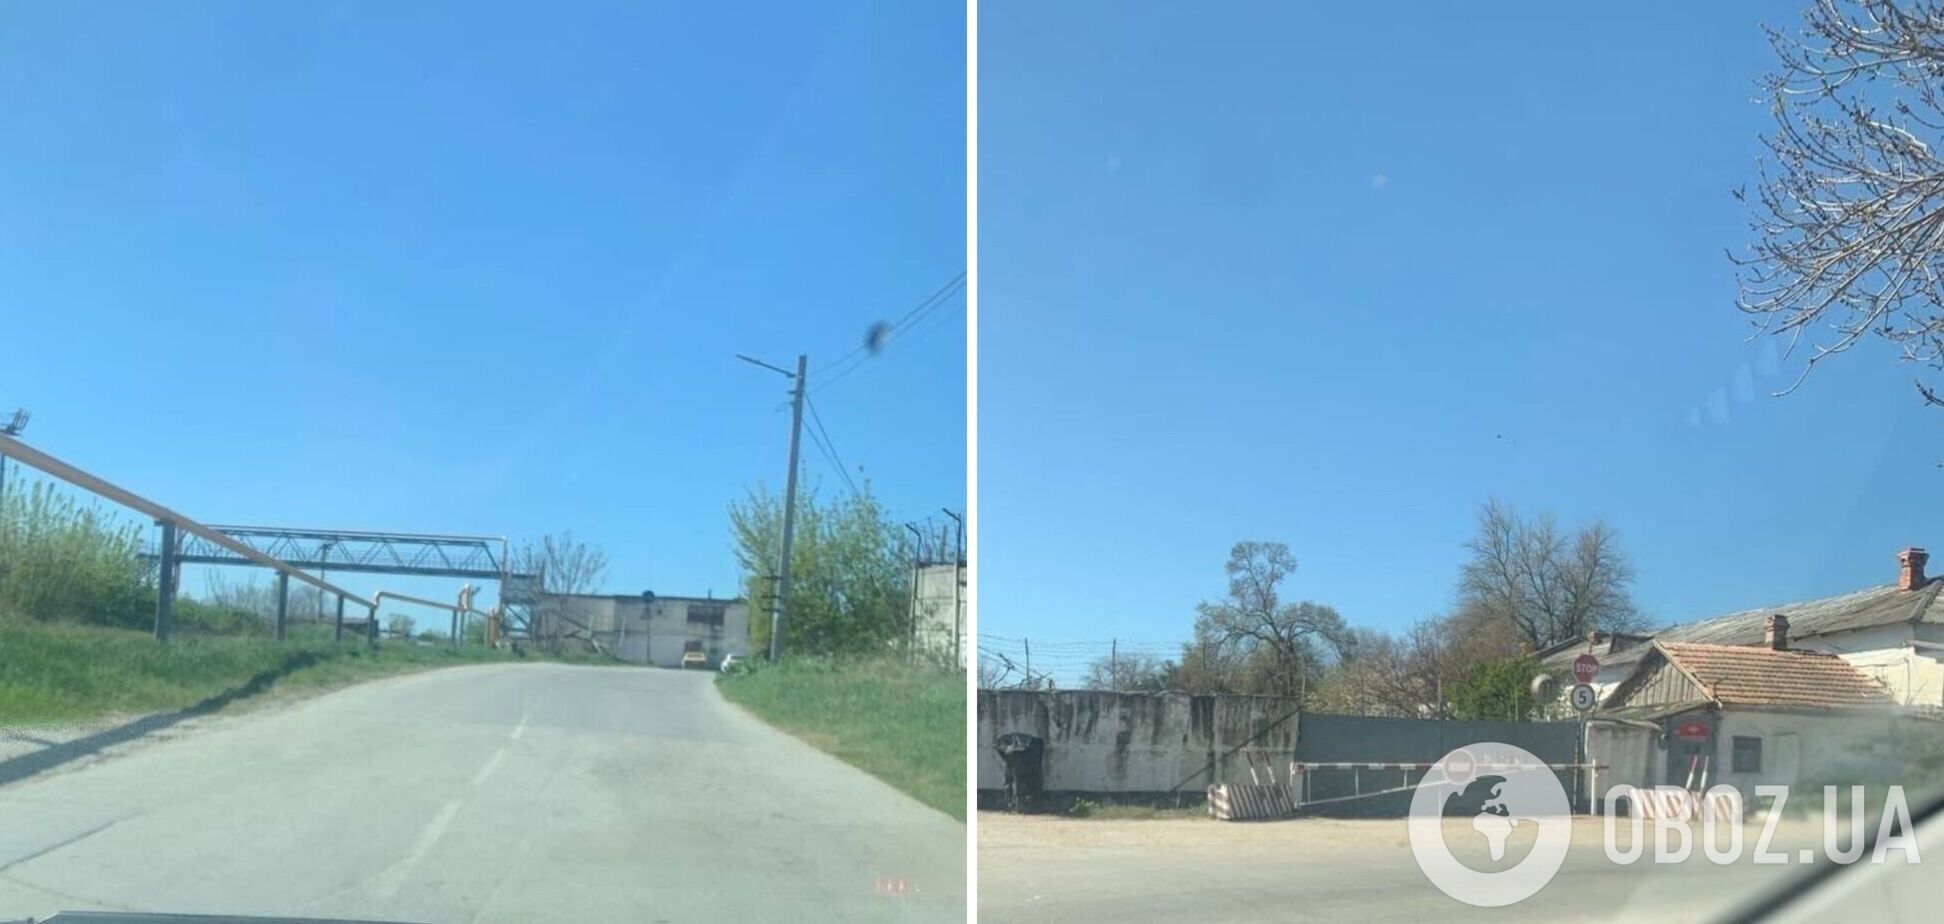 Агенти 'Атеш' виявили базу матеріально-технічного забезпечення ЧФ у Севастополі: дані передали Силам оборони